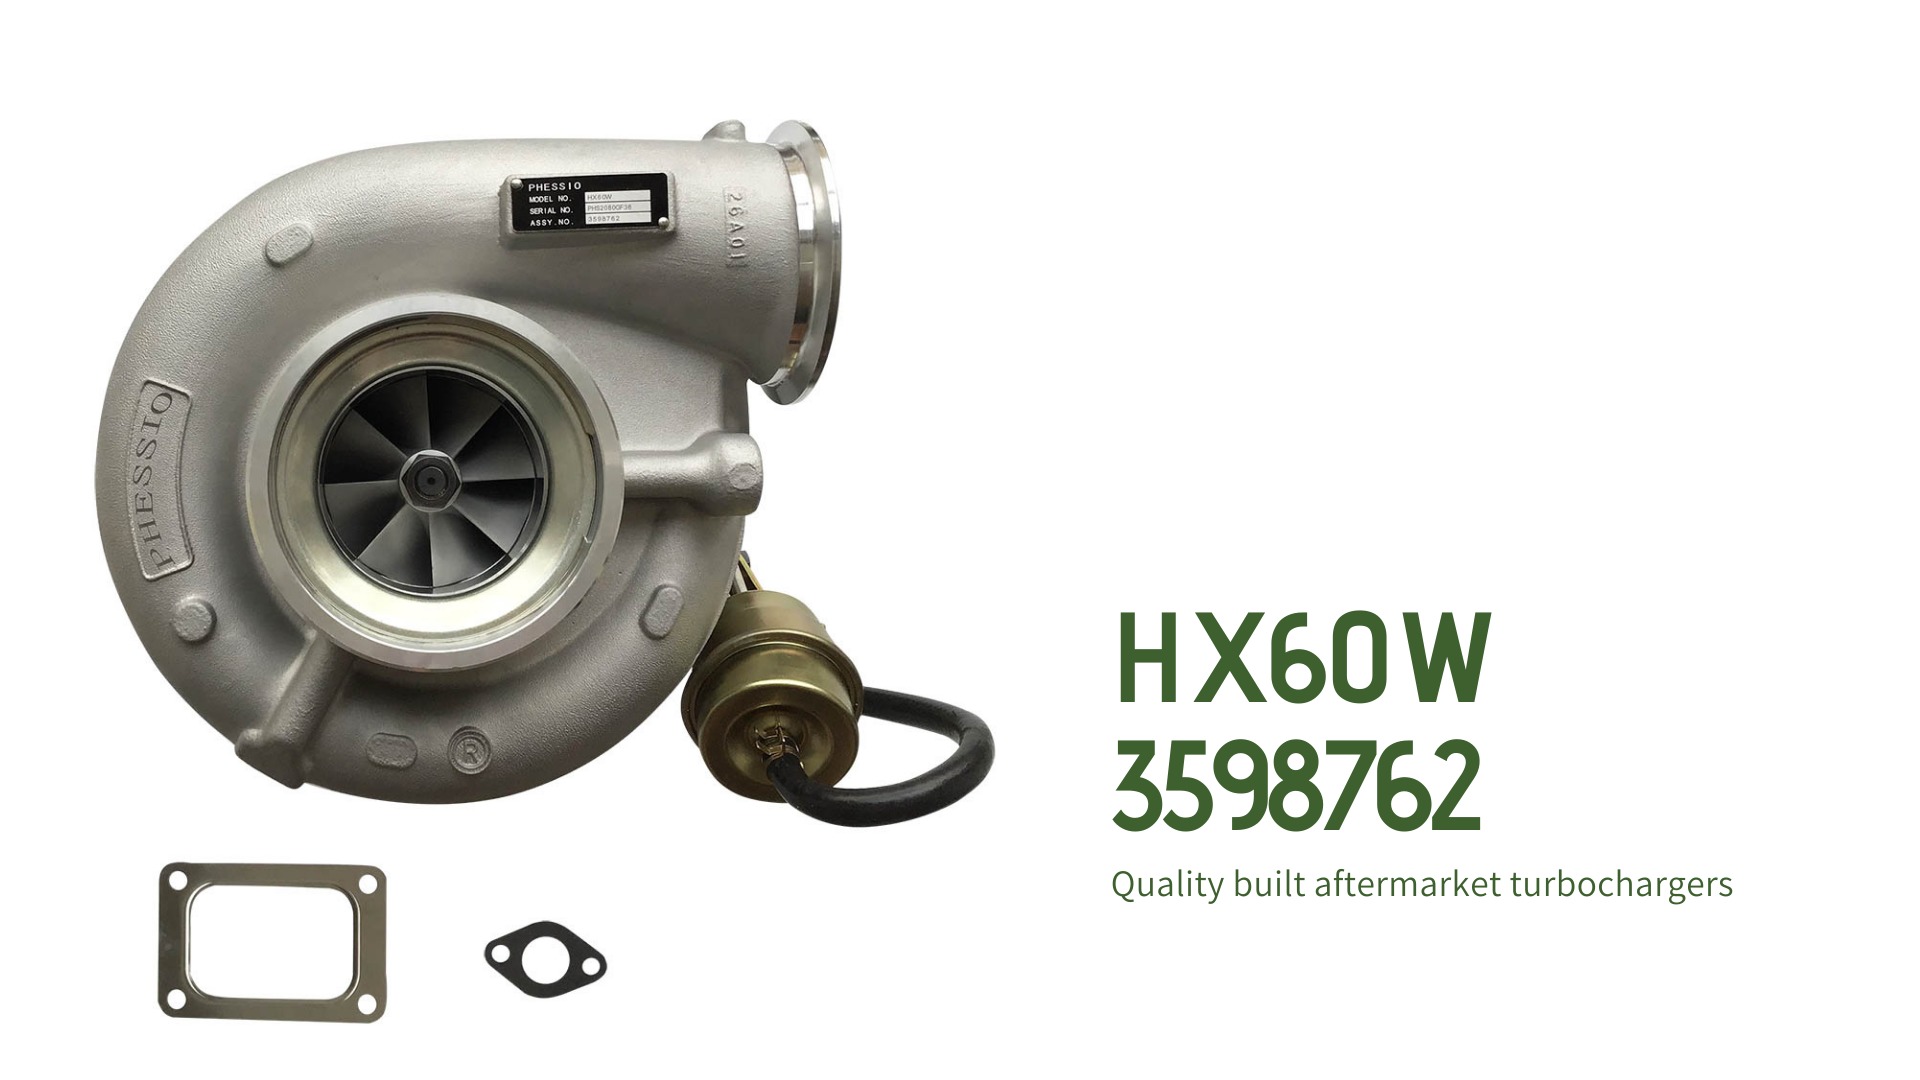 HX60W Turbocharger 3598762